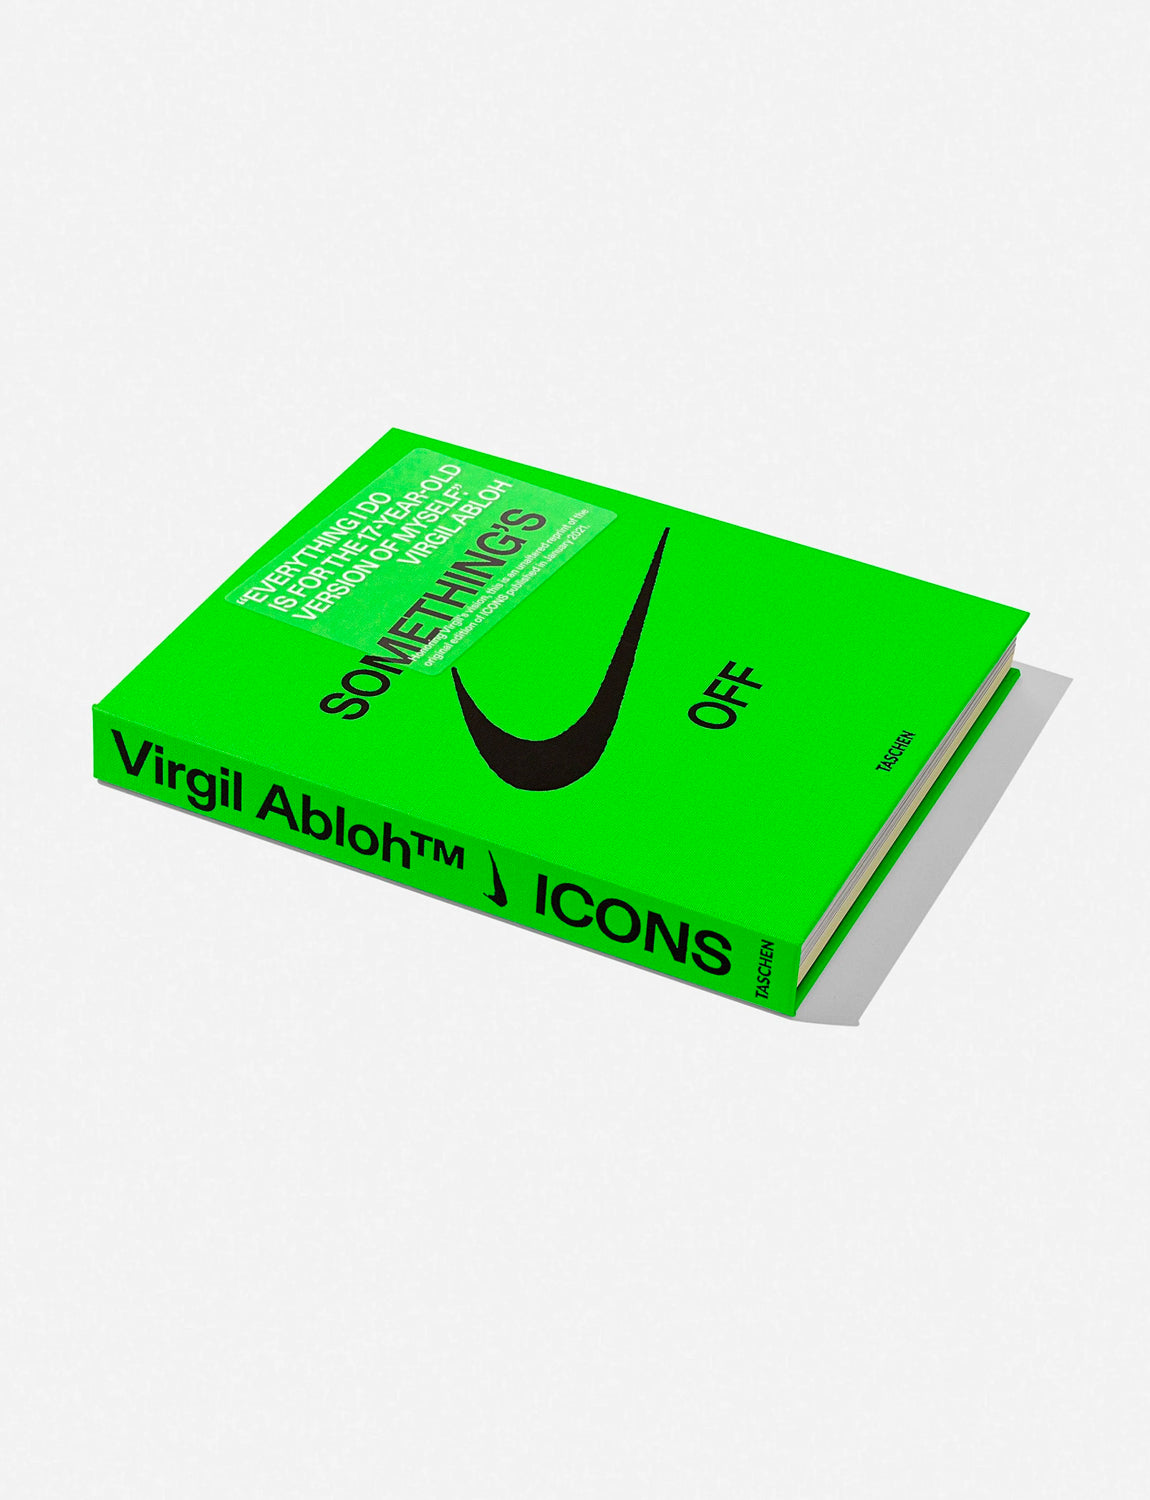 Virgil Abloh opens an exclusive Louis Vuitton bookstore in Paris